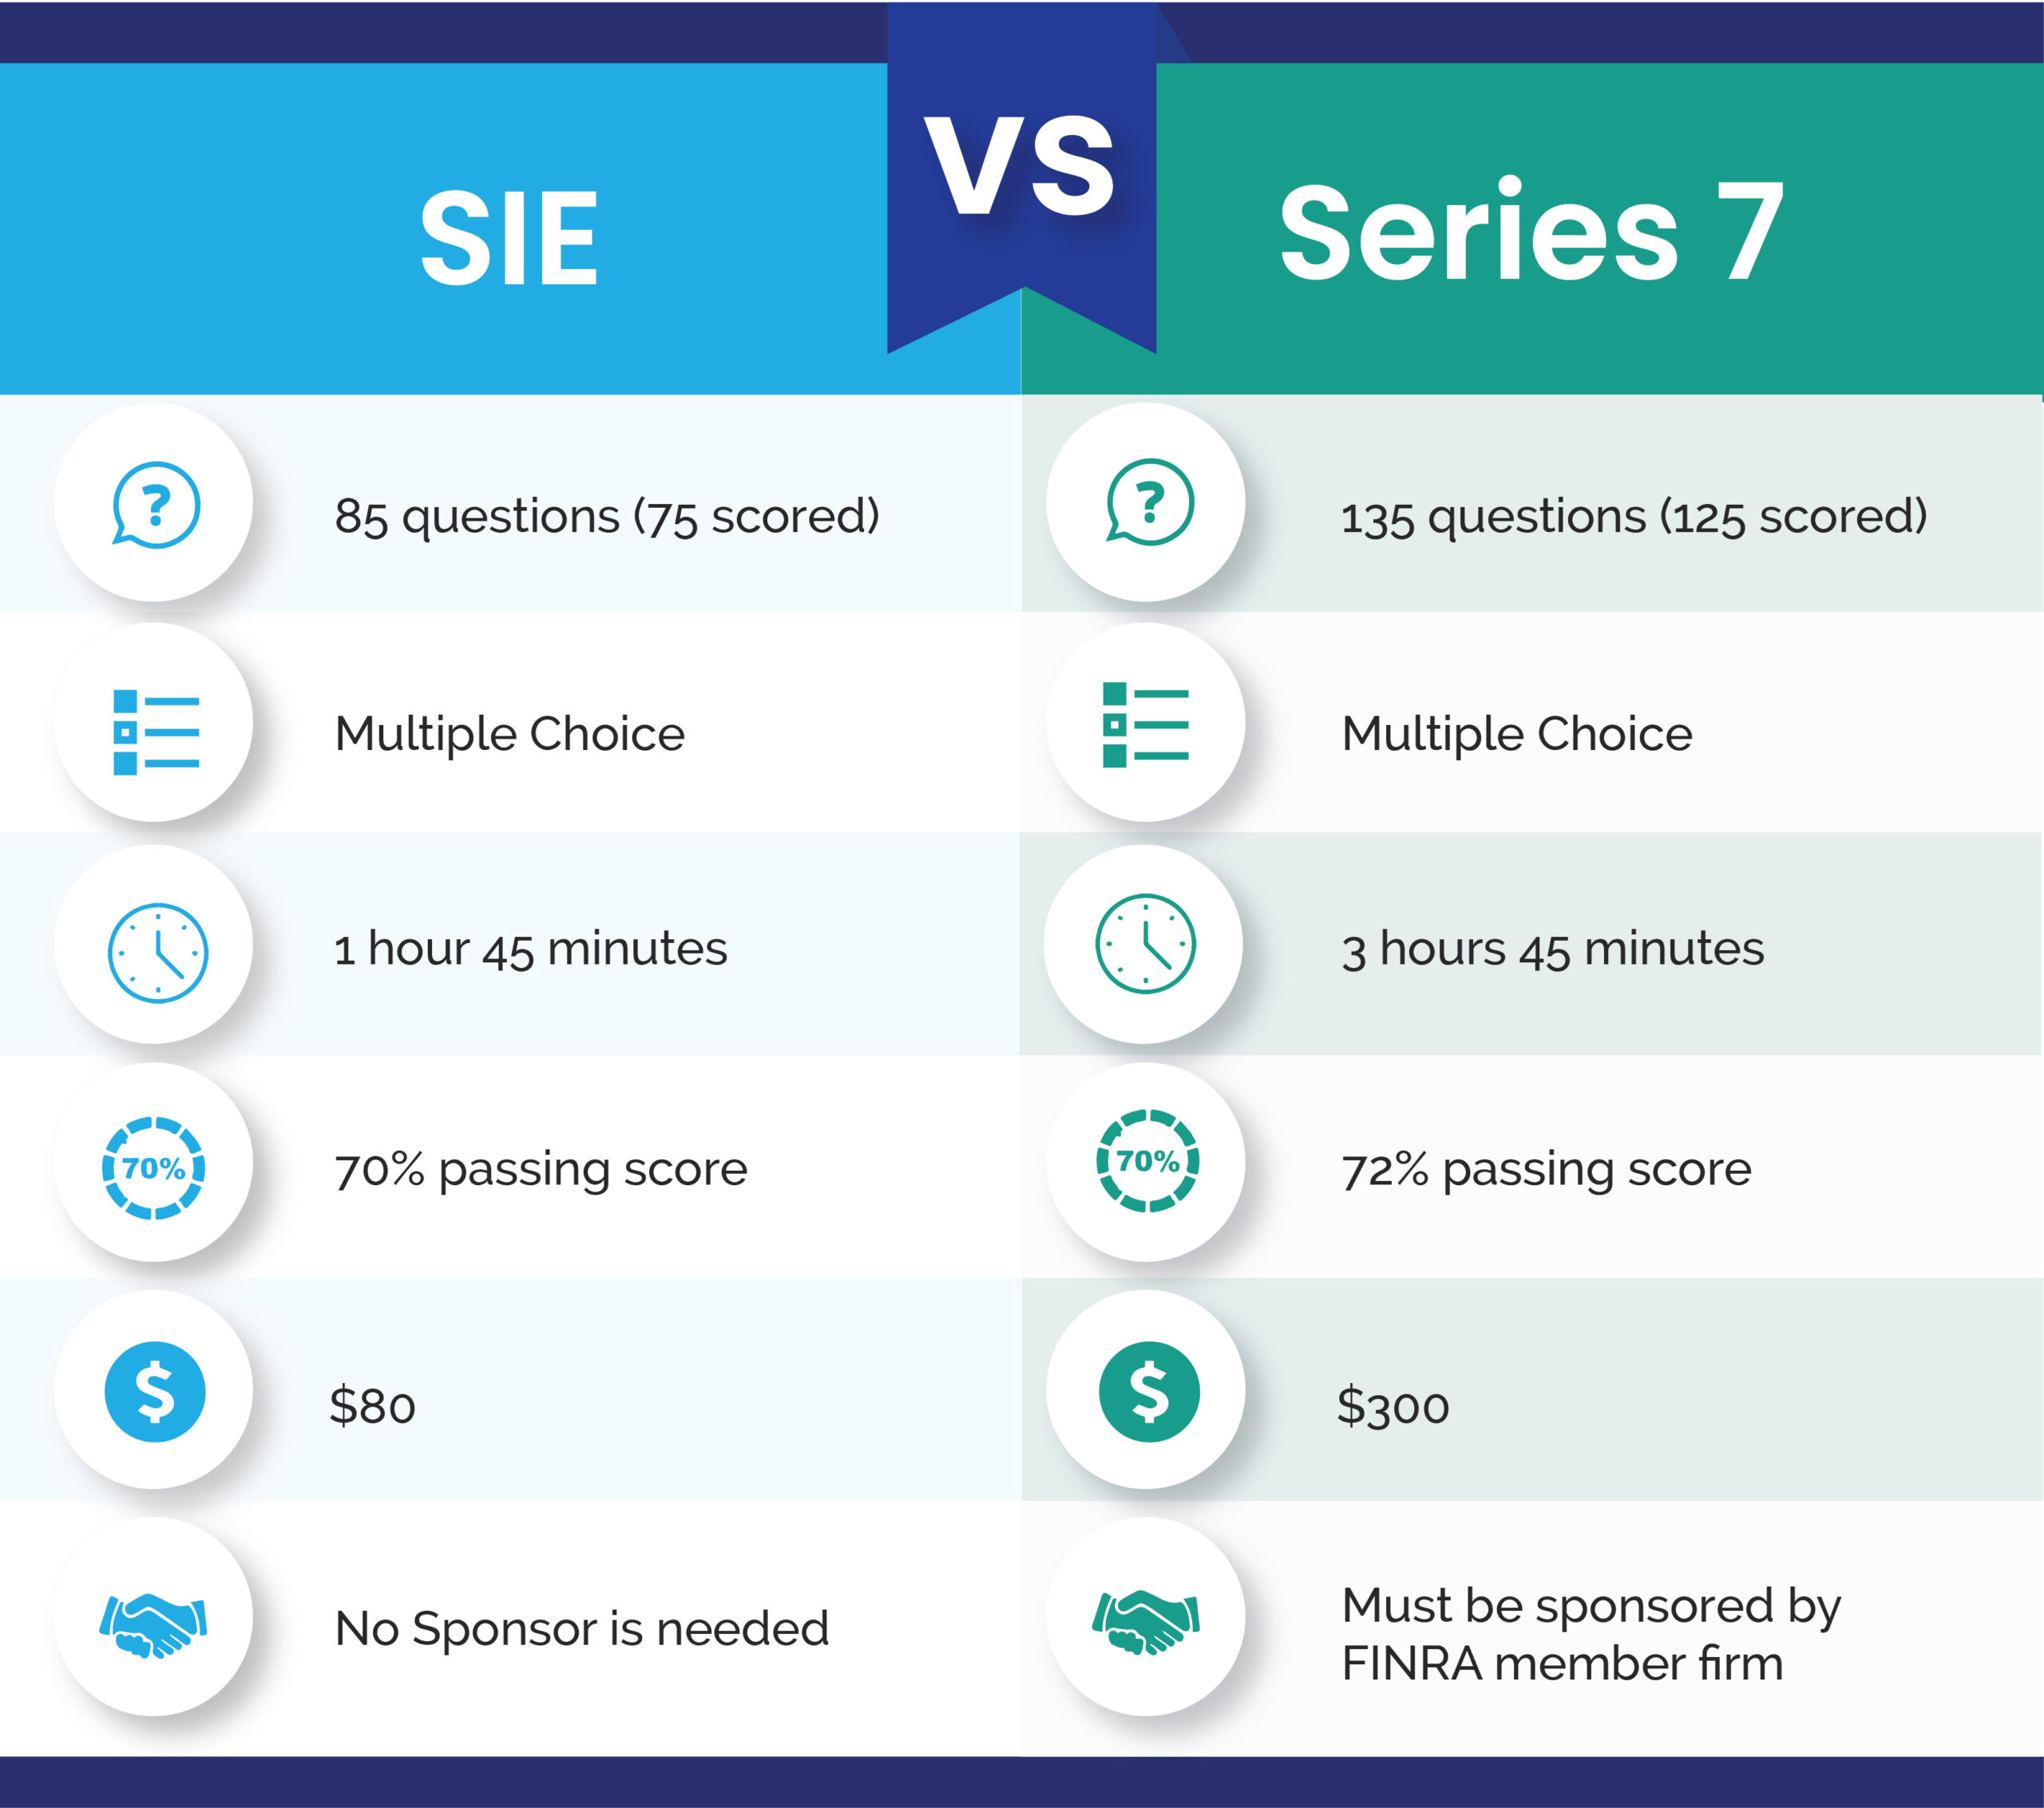 SIE vs Series 7